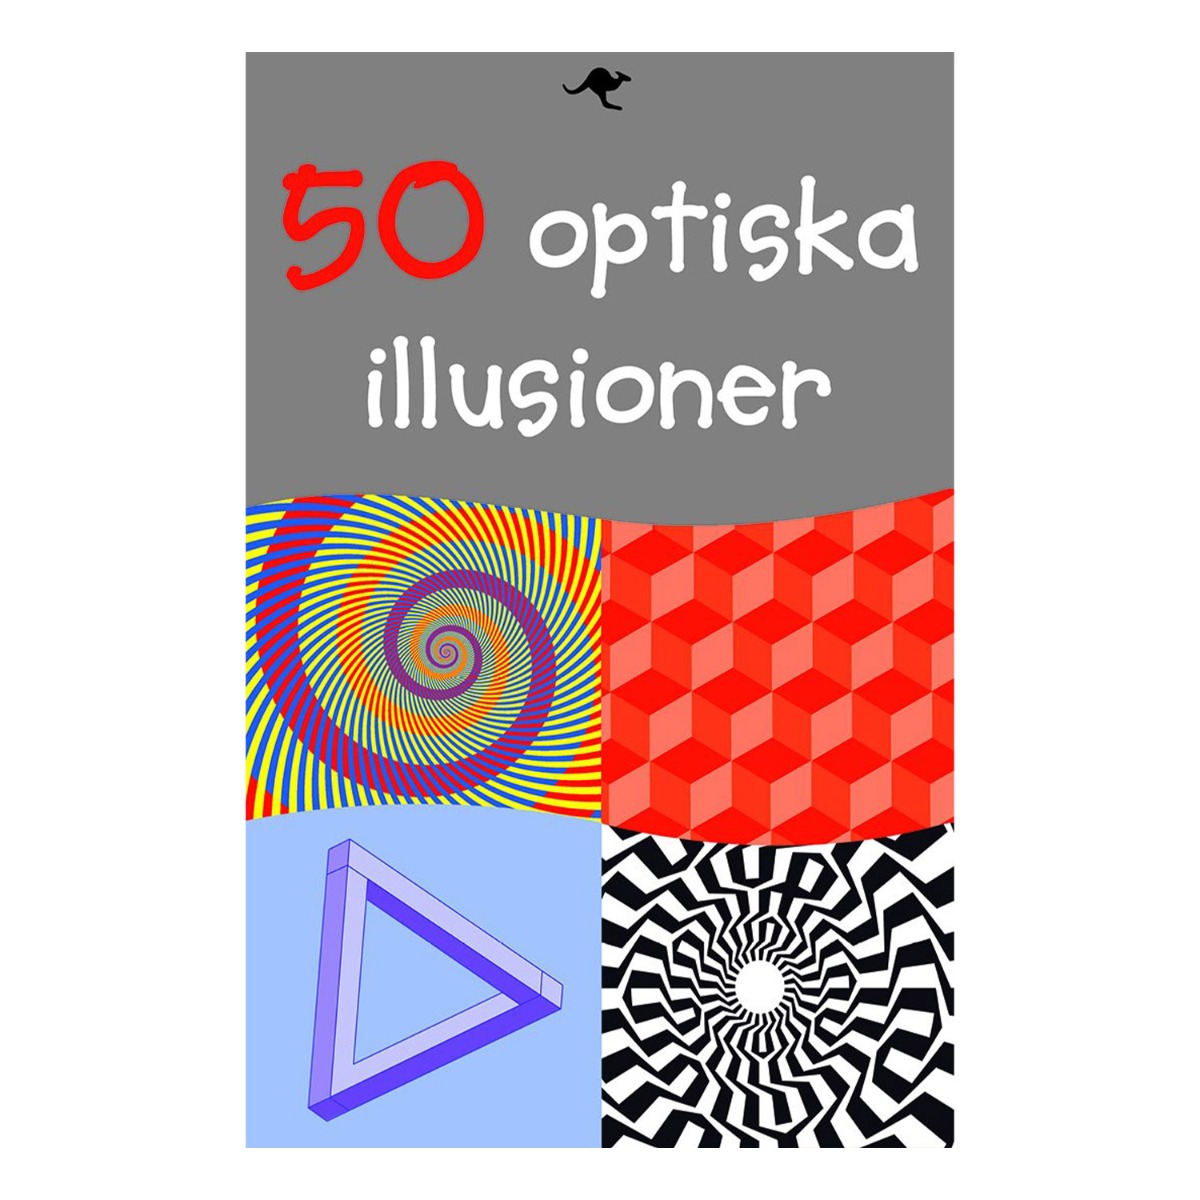 50 optiska illusionerproduktzoombild #1